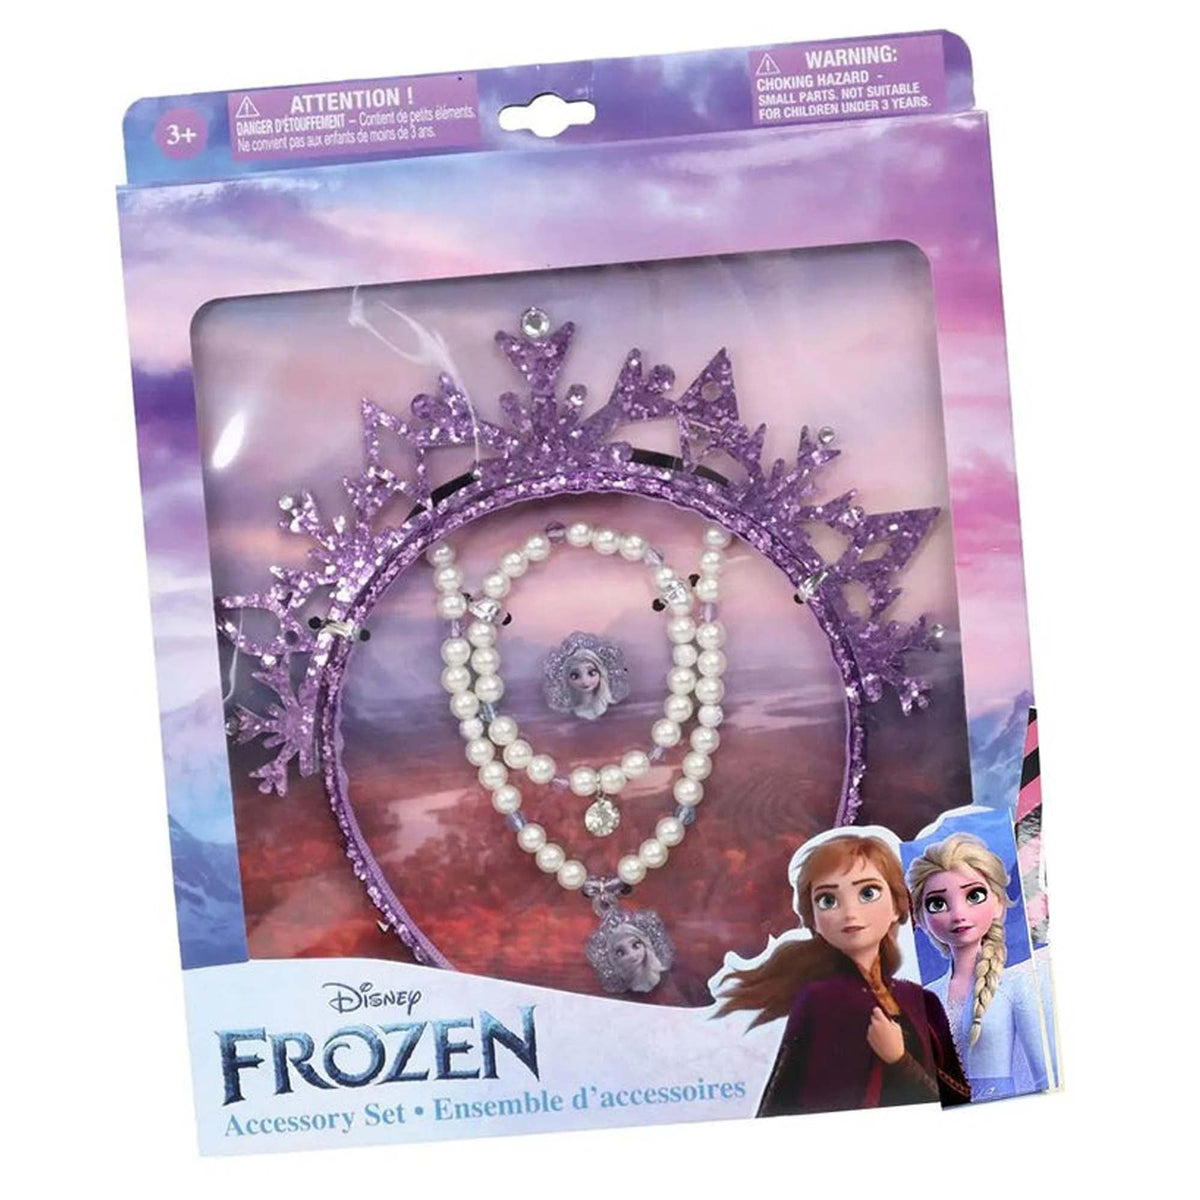 DANAWARES Kids Birthday Disney Frozen Accessory Set, 1 Count